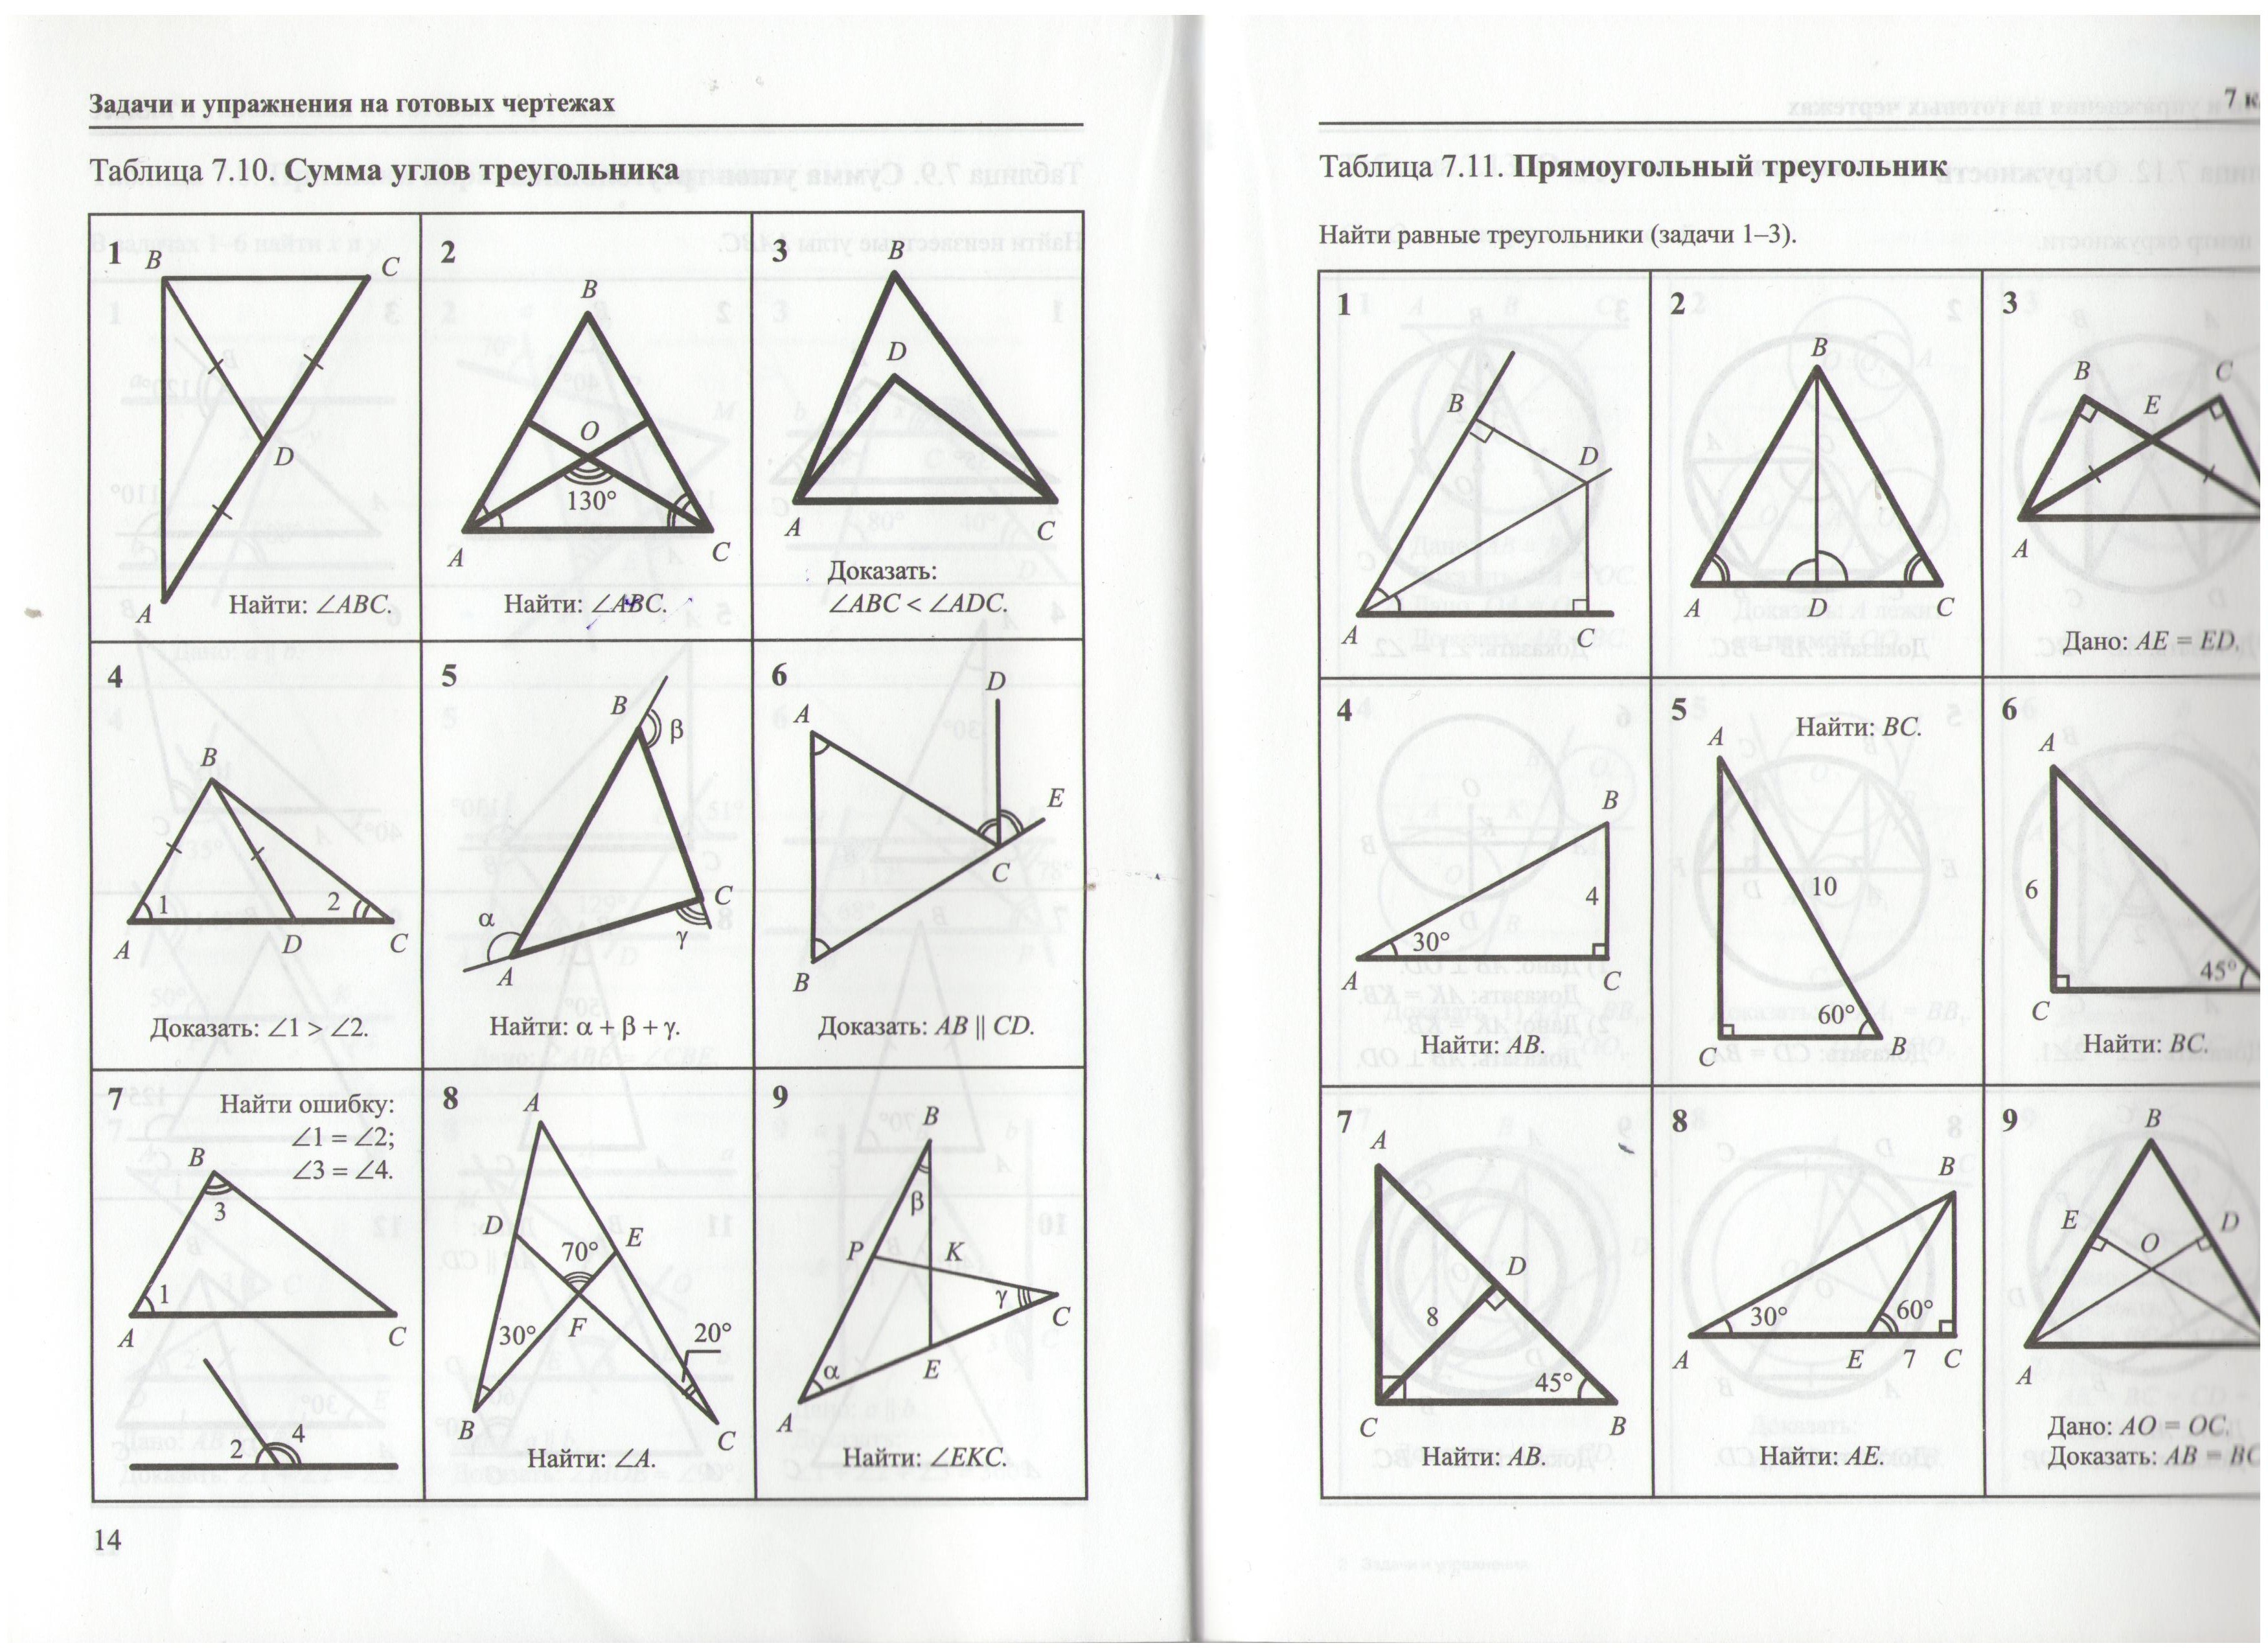 Решение прямоугольных треугольников по готовым чертежам. Прямоугольный треугольник задачи на готовых чертежах 7 класс. Геометрия Рабинович 7-9 класс задачи на готовых чертежах. Задачи на прямоугольный треугольник 7 класс по готовым чертежам. Прямоугольные треугольники решение задач по готовым чертежам.